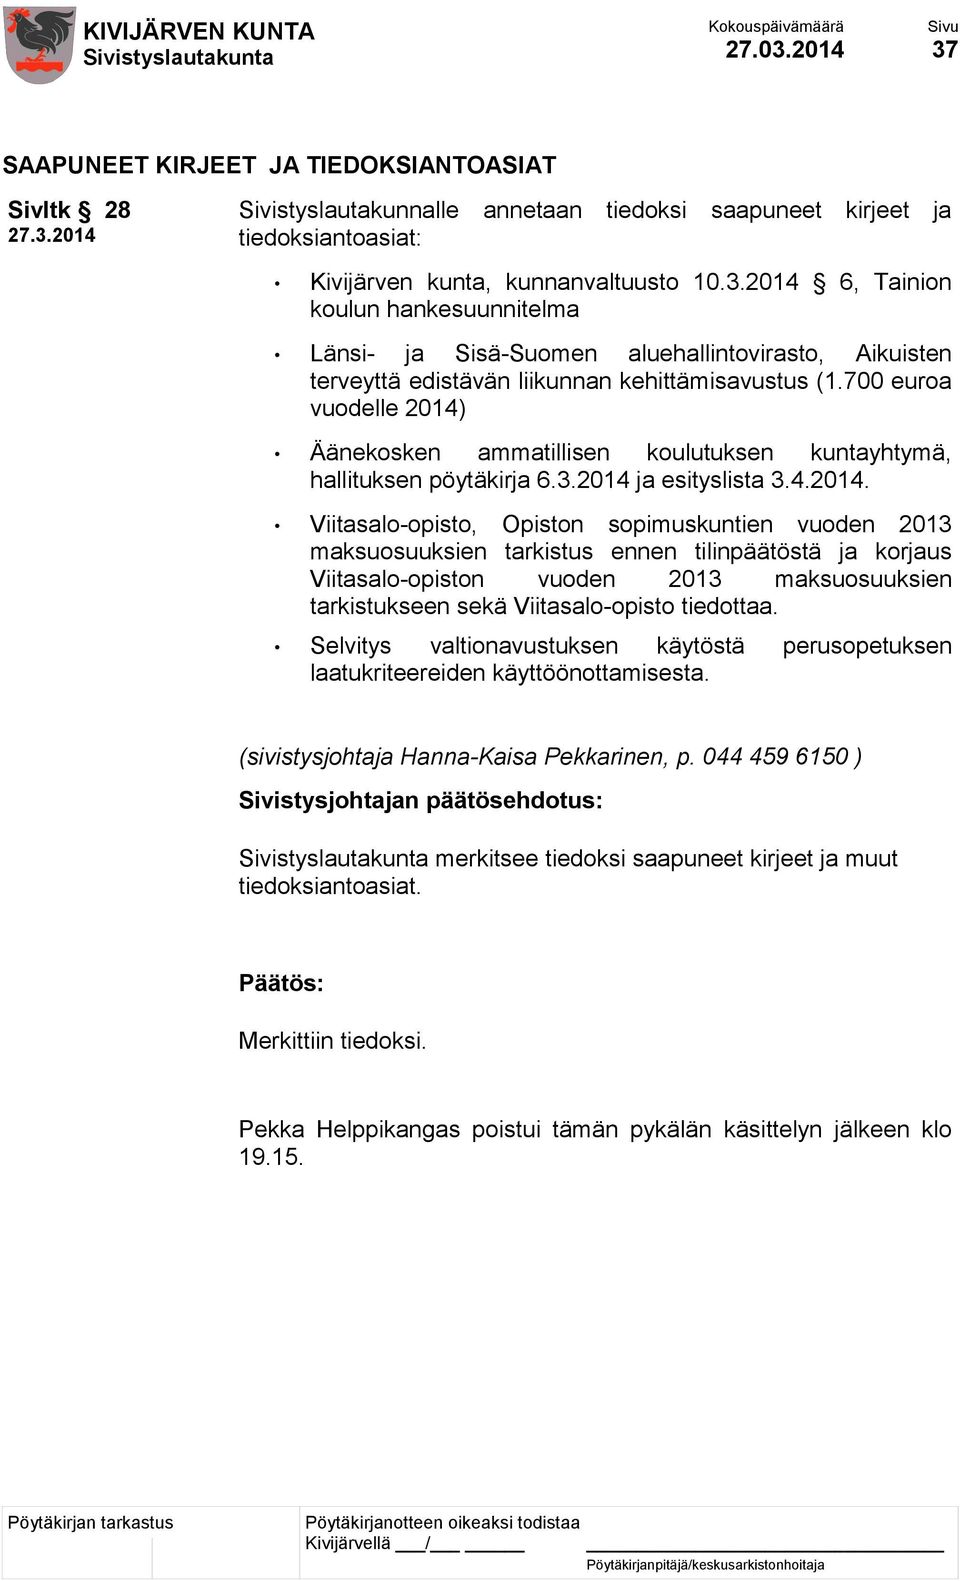 Äänekosken ammatillisen koulutuksen kuntayhtymä, hallituksen pöytäkirja 6.3.2014 